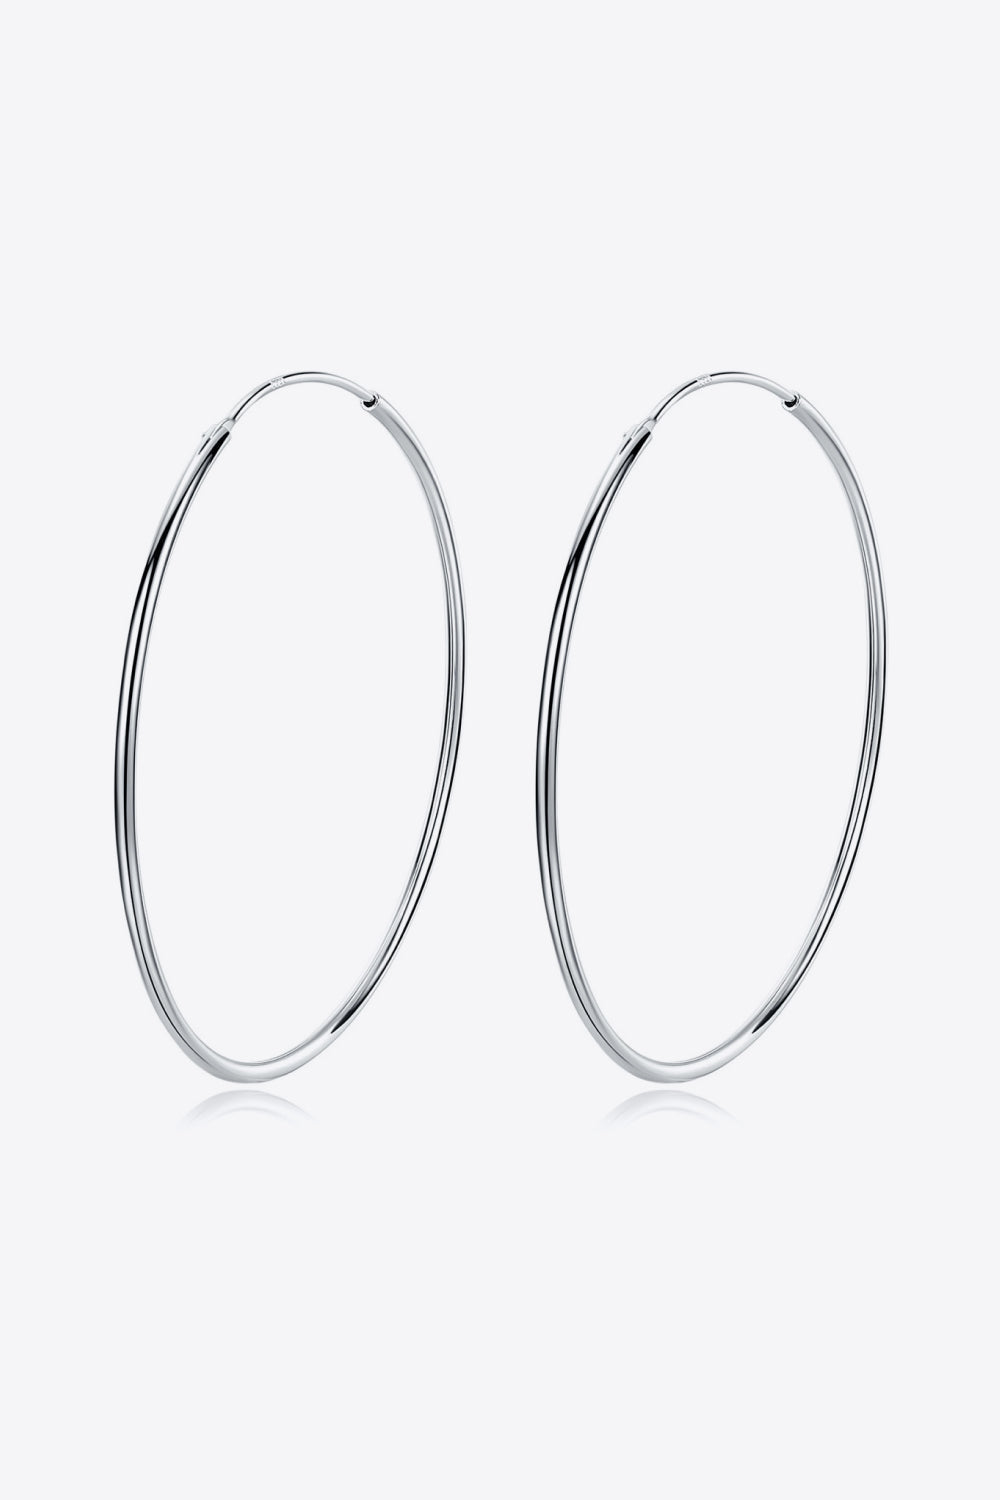 925 Sterling Silver Hoop Earrings-Ever Joy